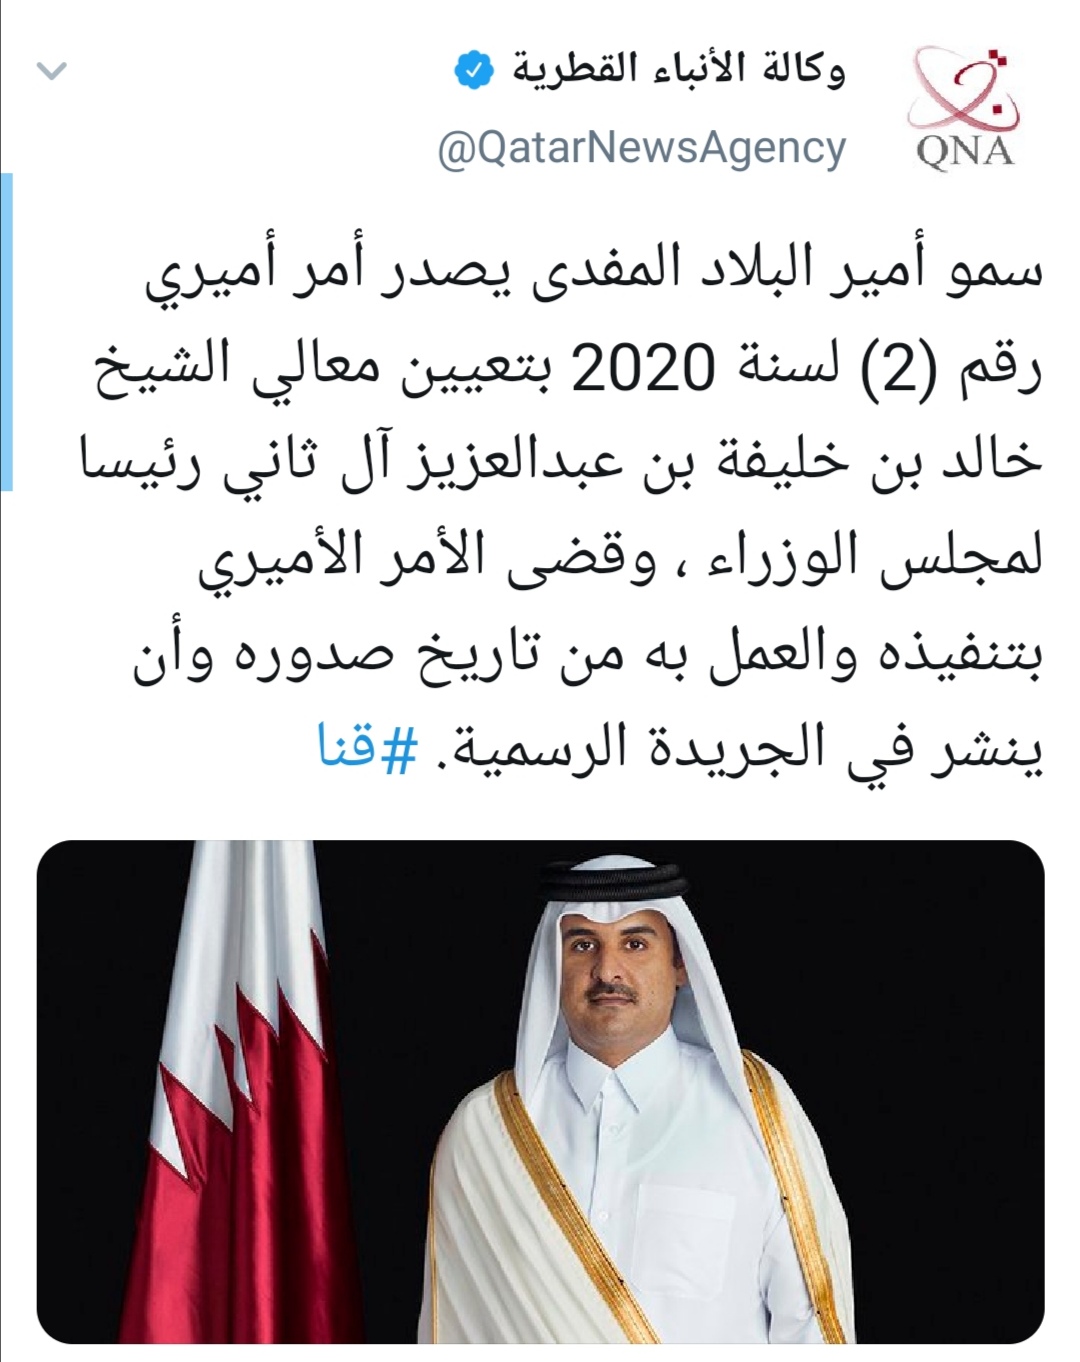 أمير قطر يقبل استقالة رئيس الوزراء ويعين آخر في المنصب